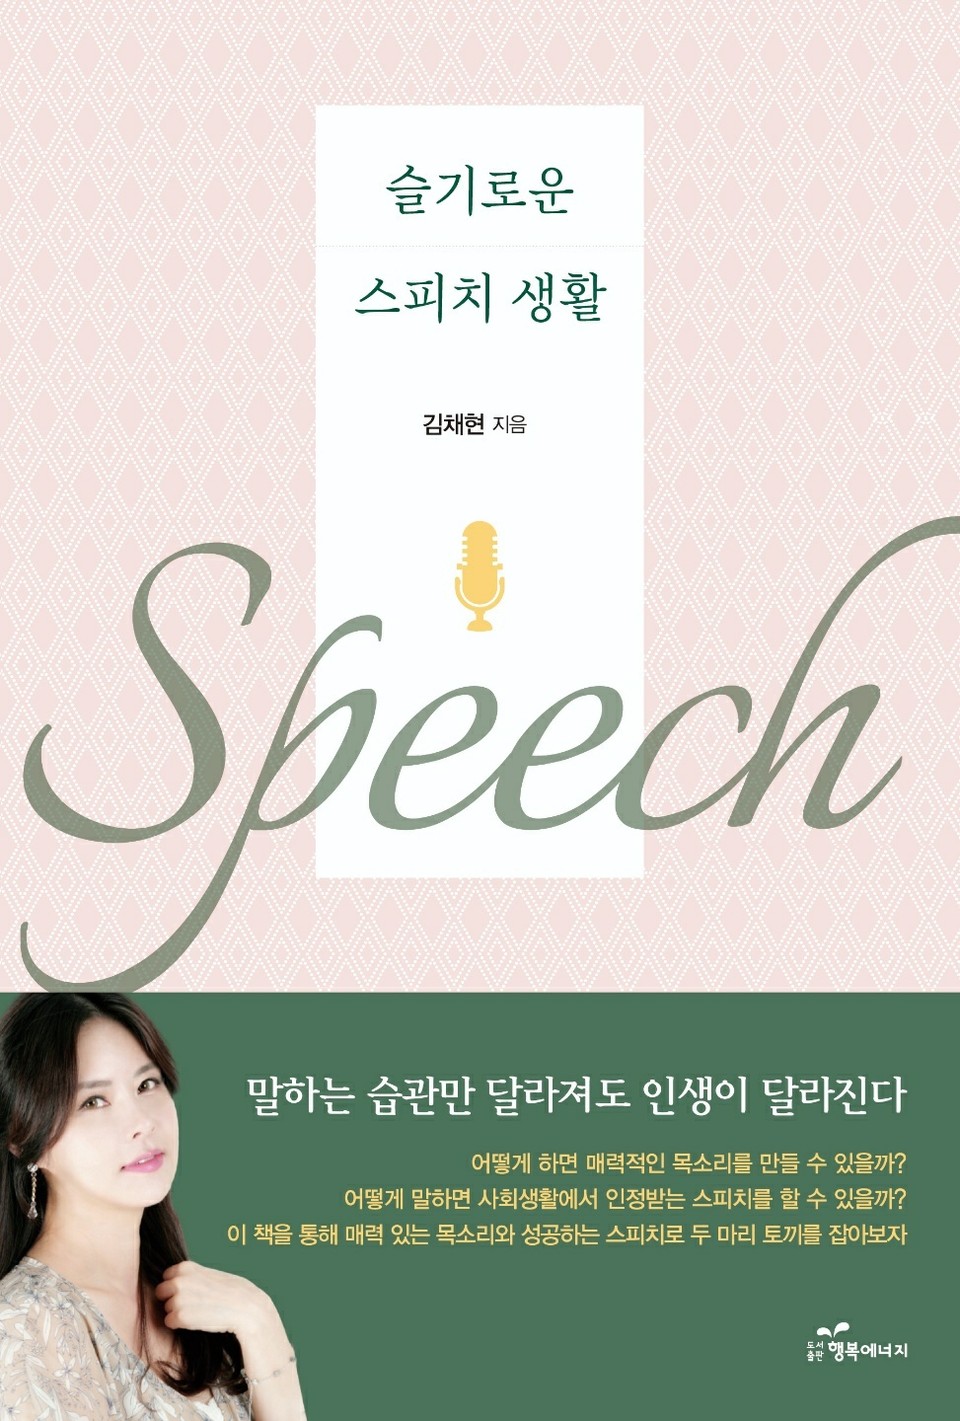 김채현의 두 번째 책 ‘슬기로운 스피치 생활’이 출간됐다.